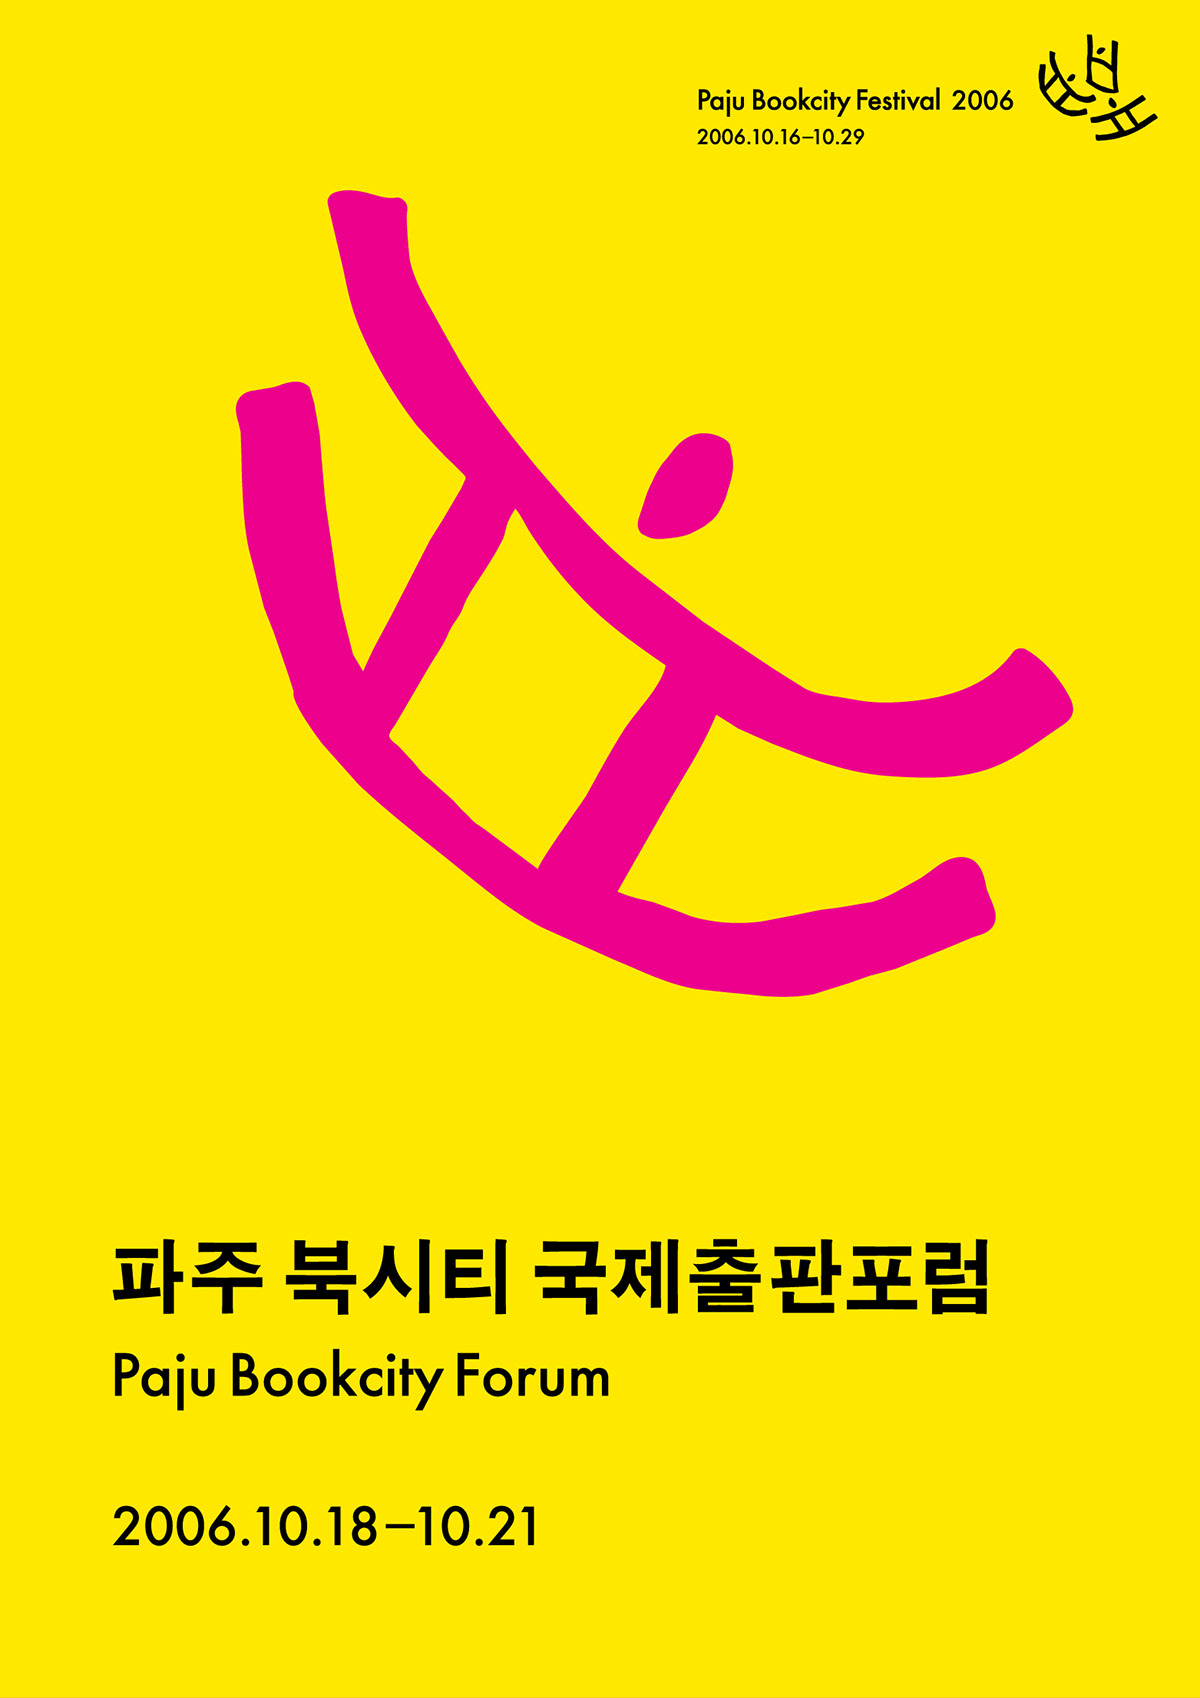 CI BI ei Event Design identity festival poster